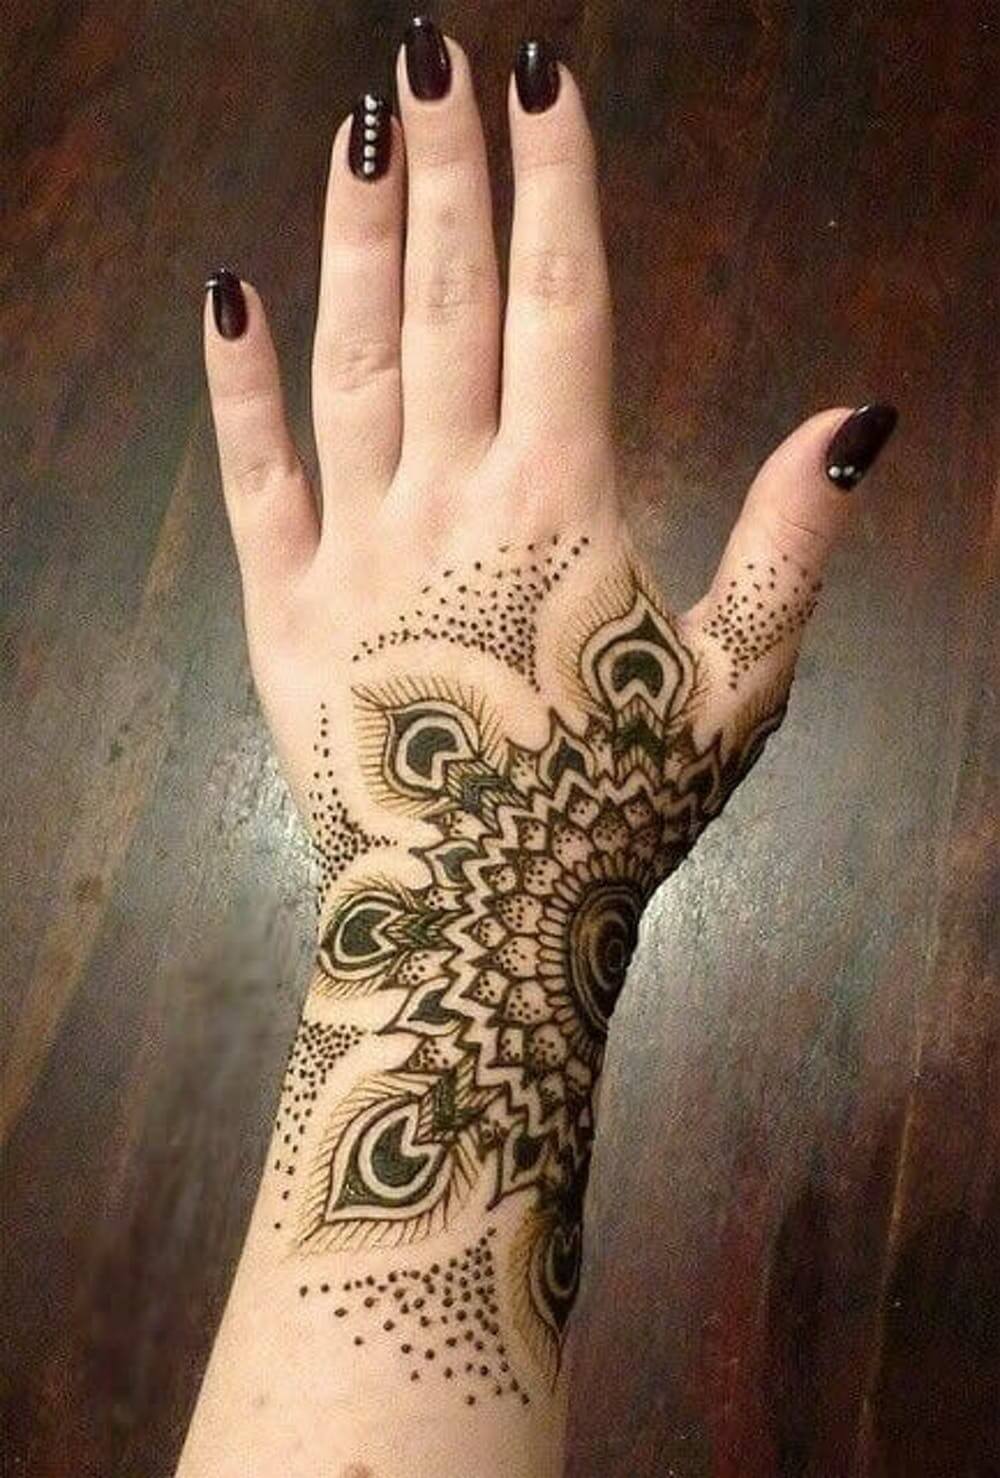 inspiringlife.pt - 22 tatuagens de henna absolutamente fantásticas para quem tem medo de agulhas